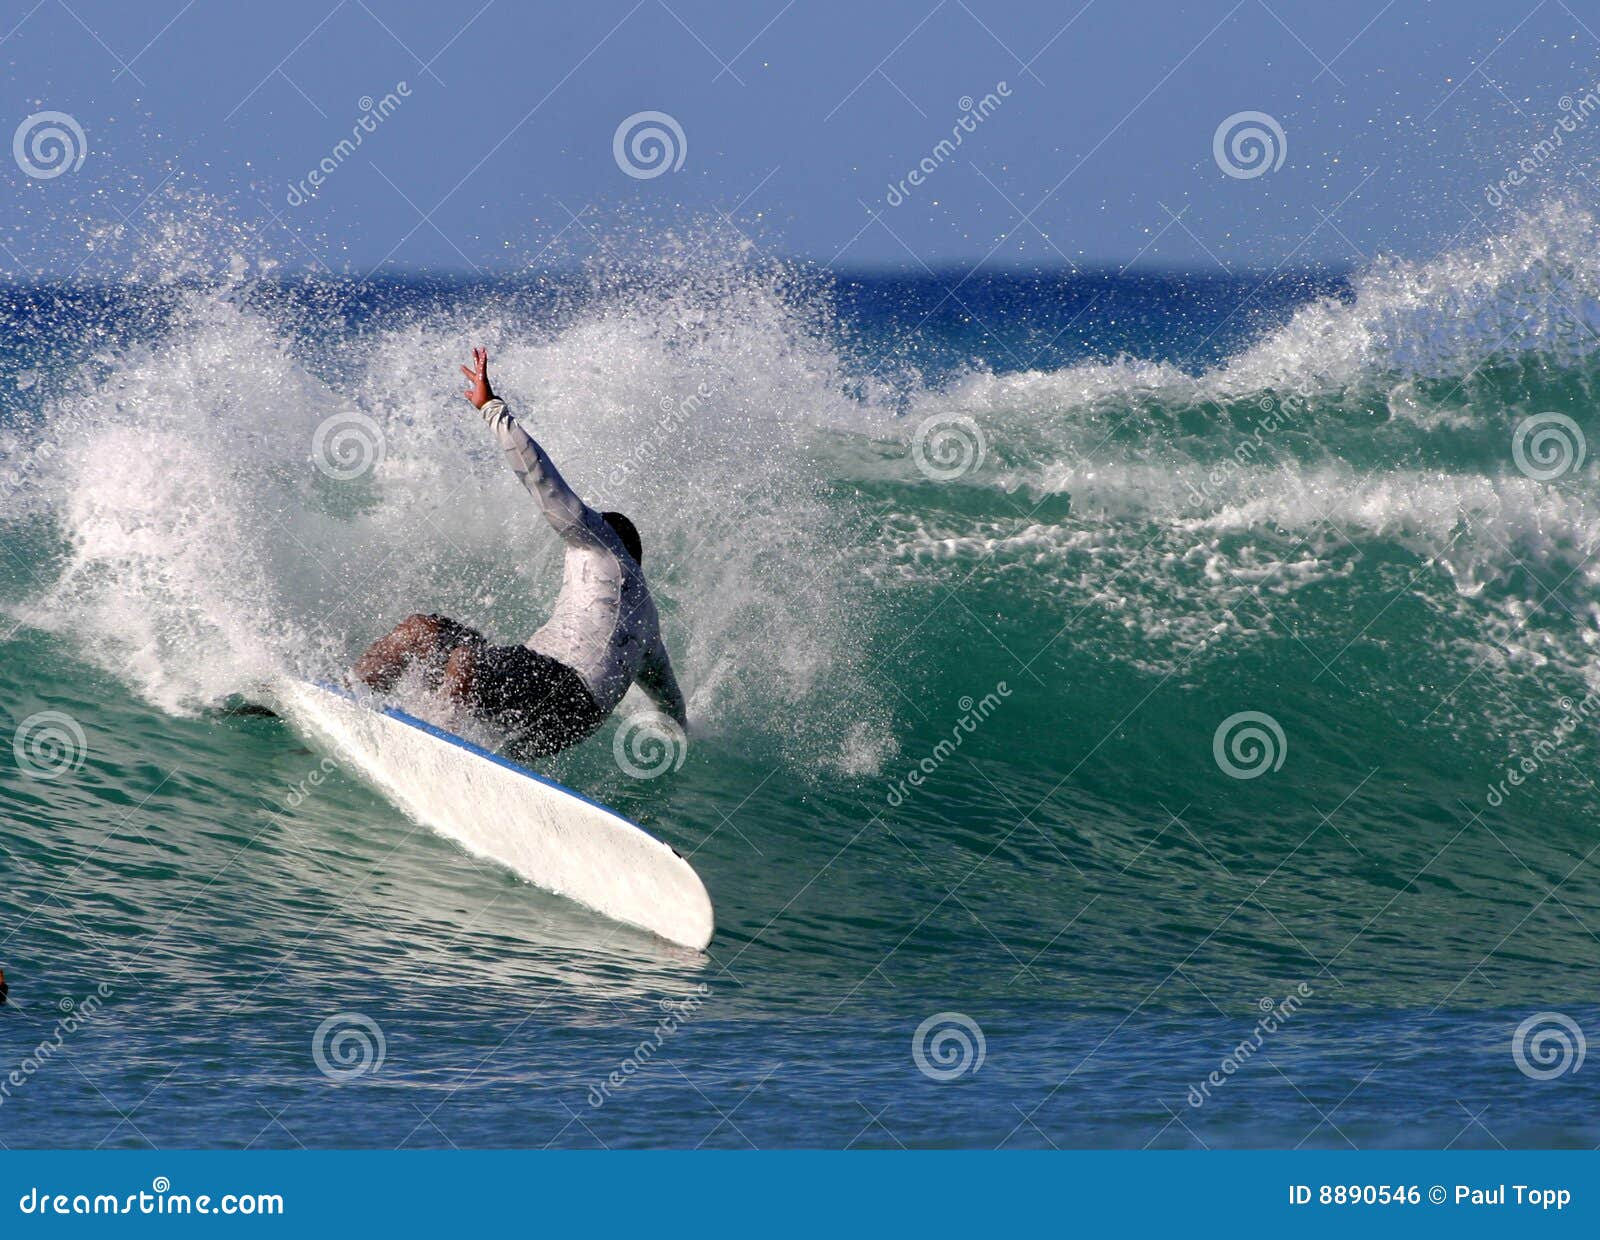 surfing power